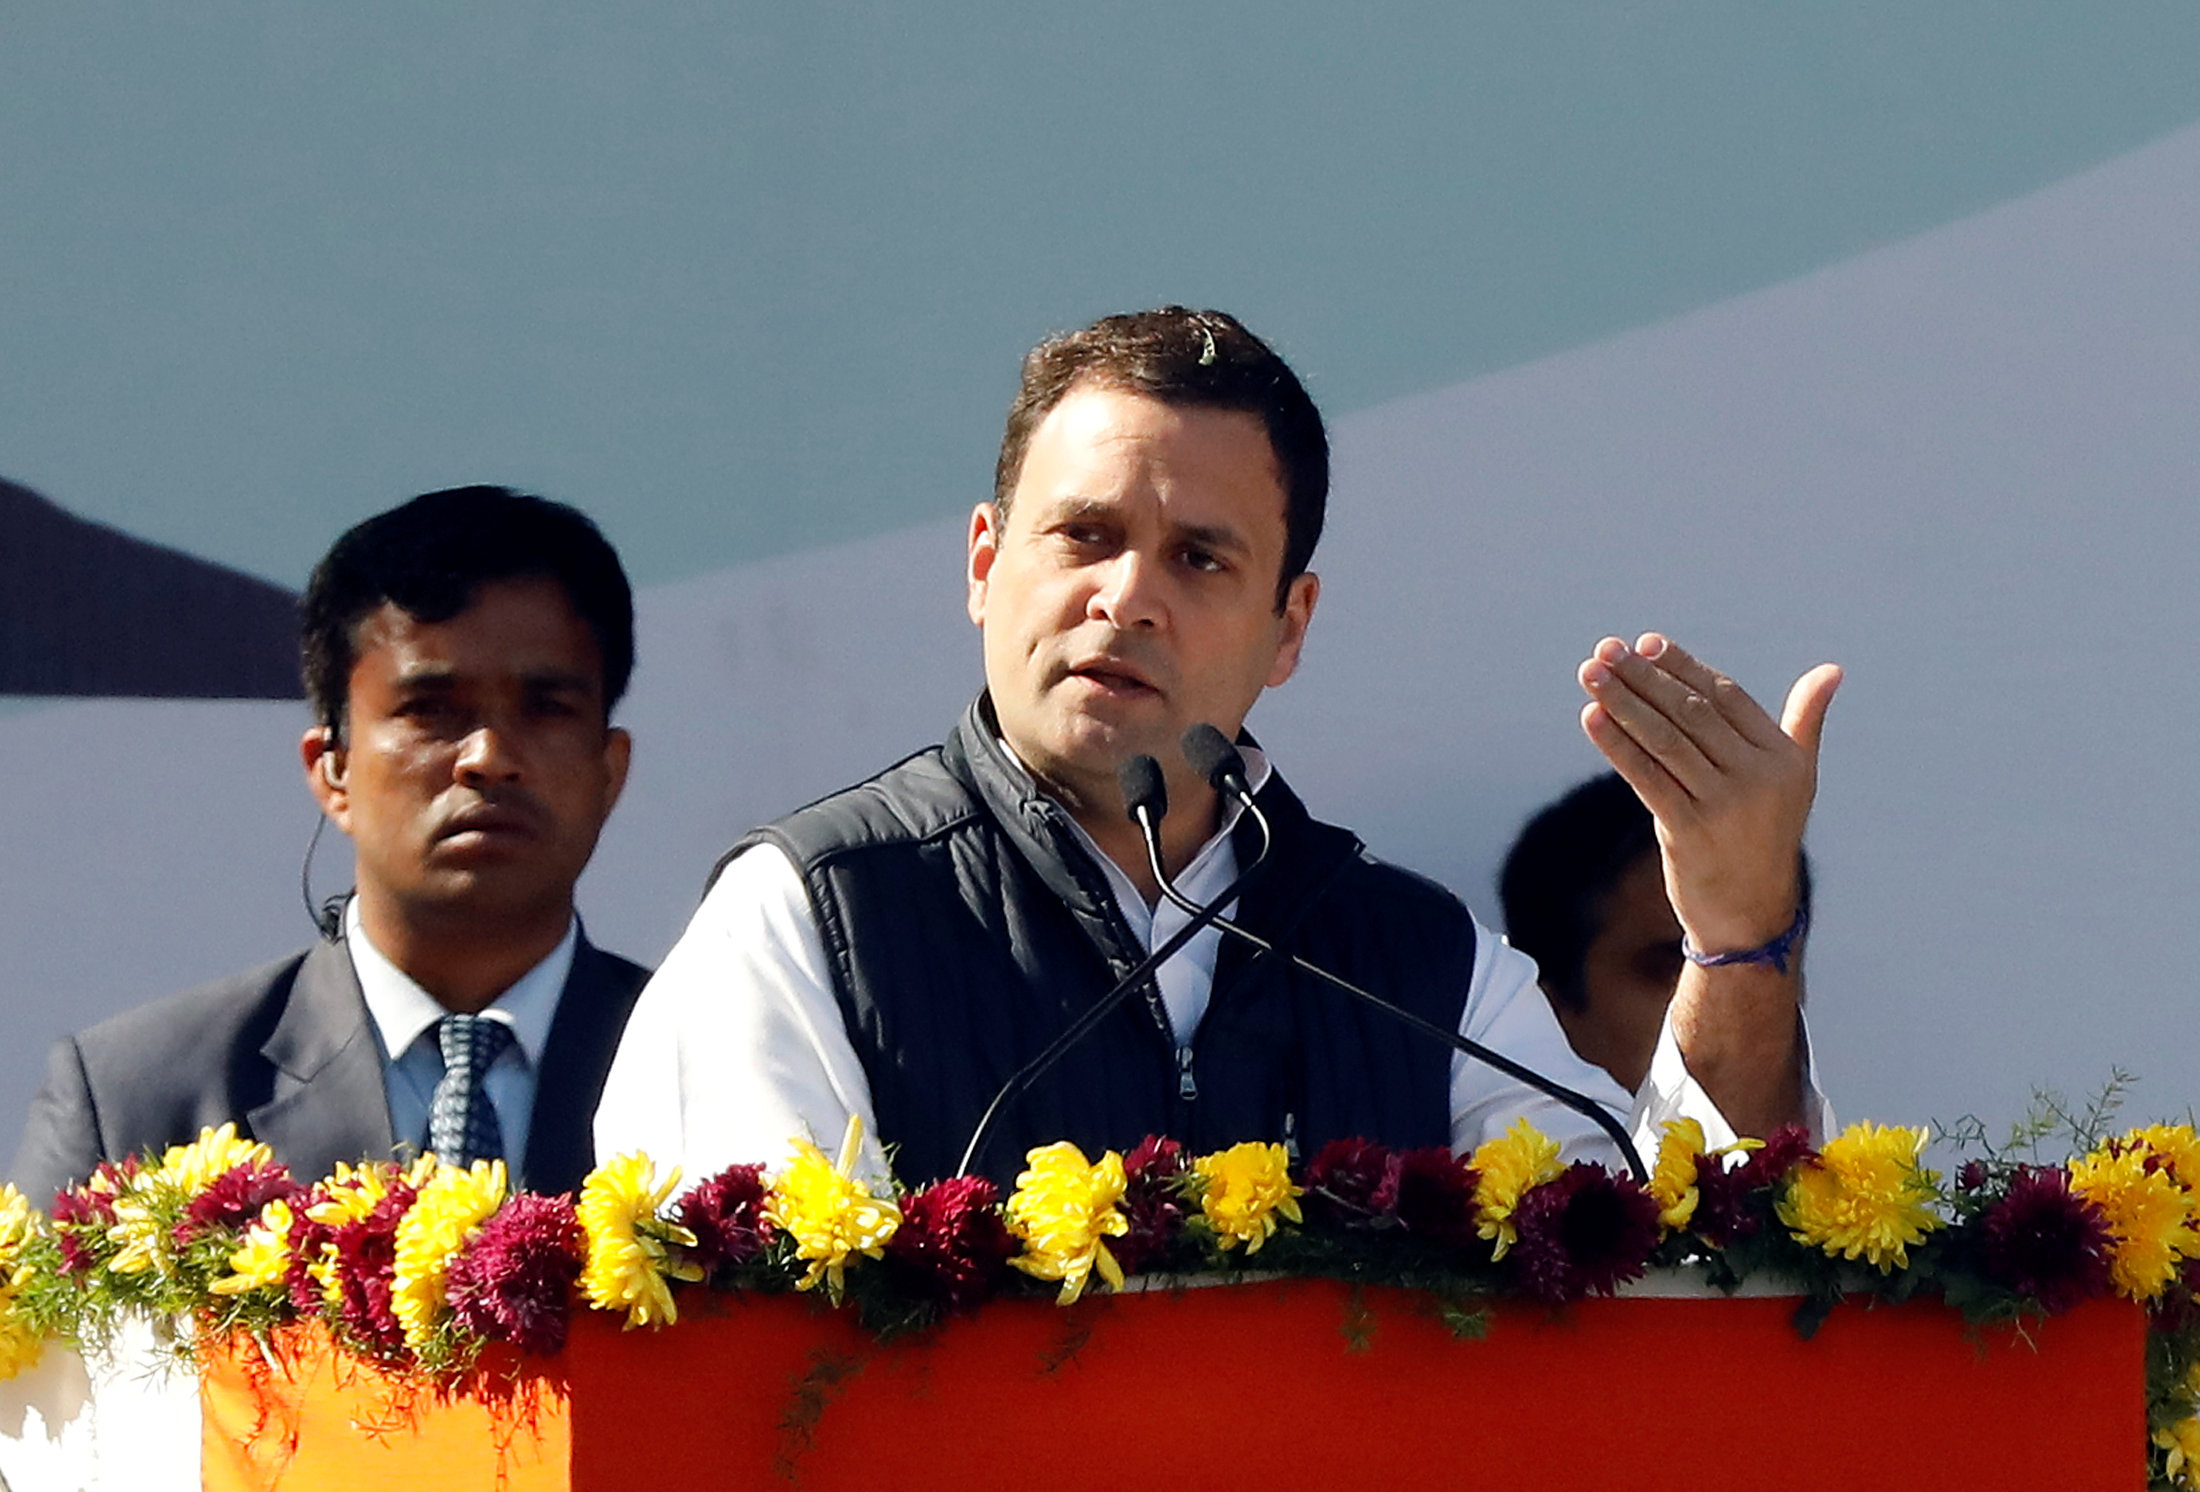 rahul gandhi toma posesion presidente partido congreso india